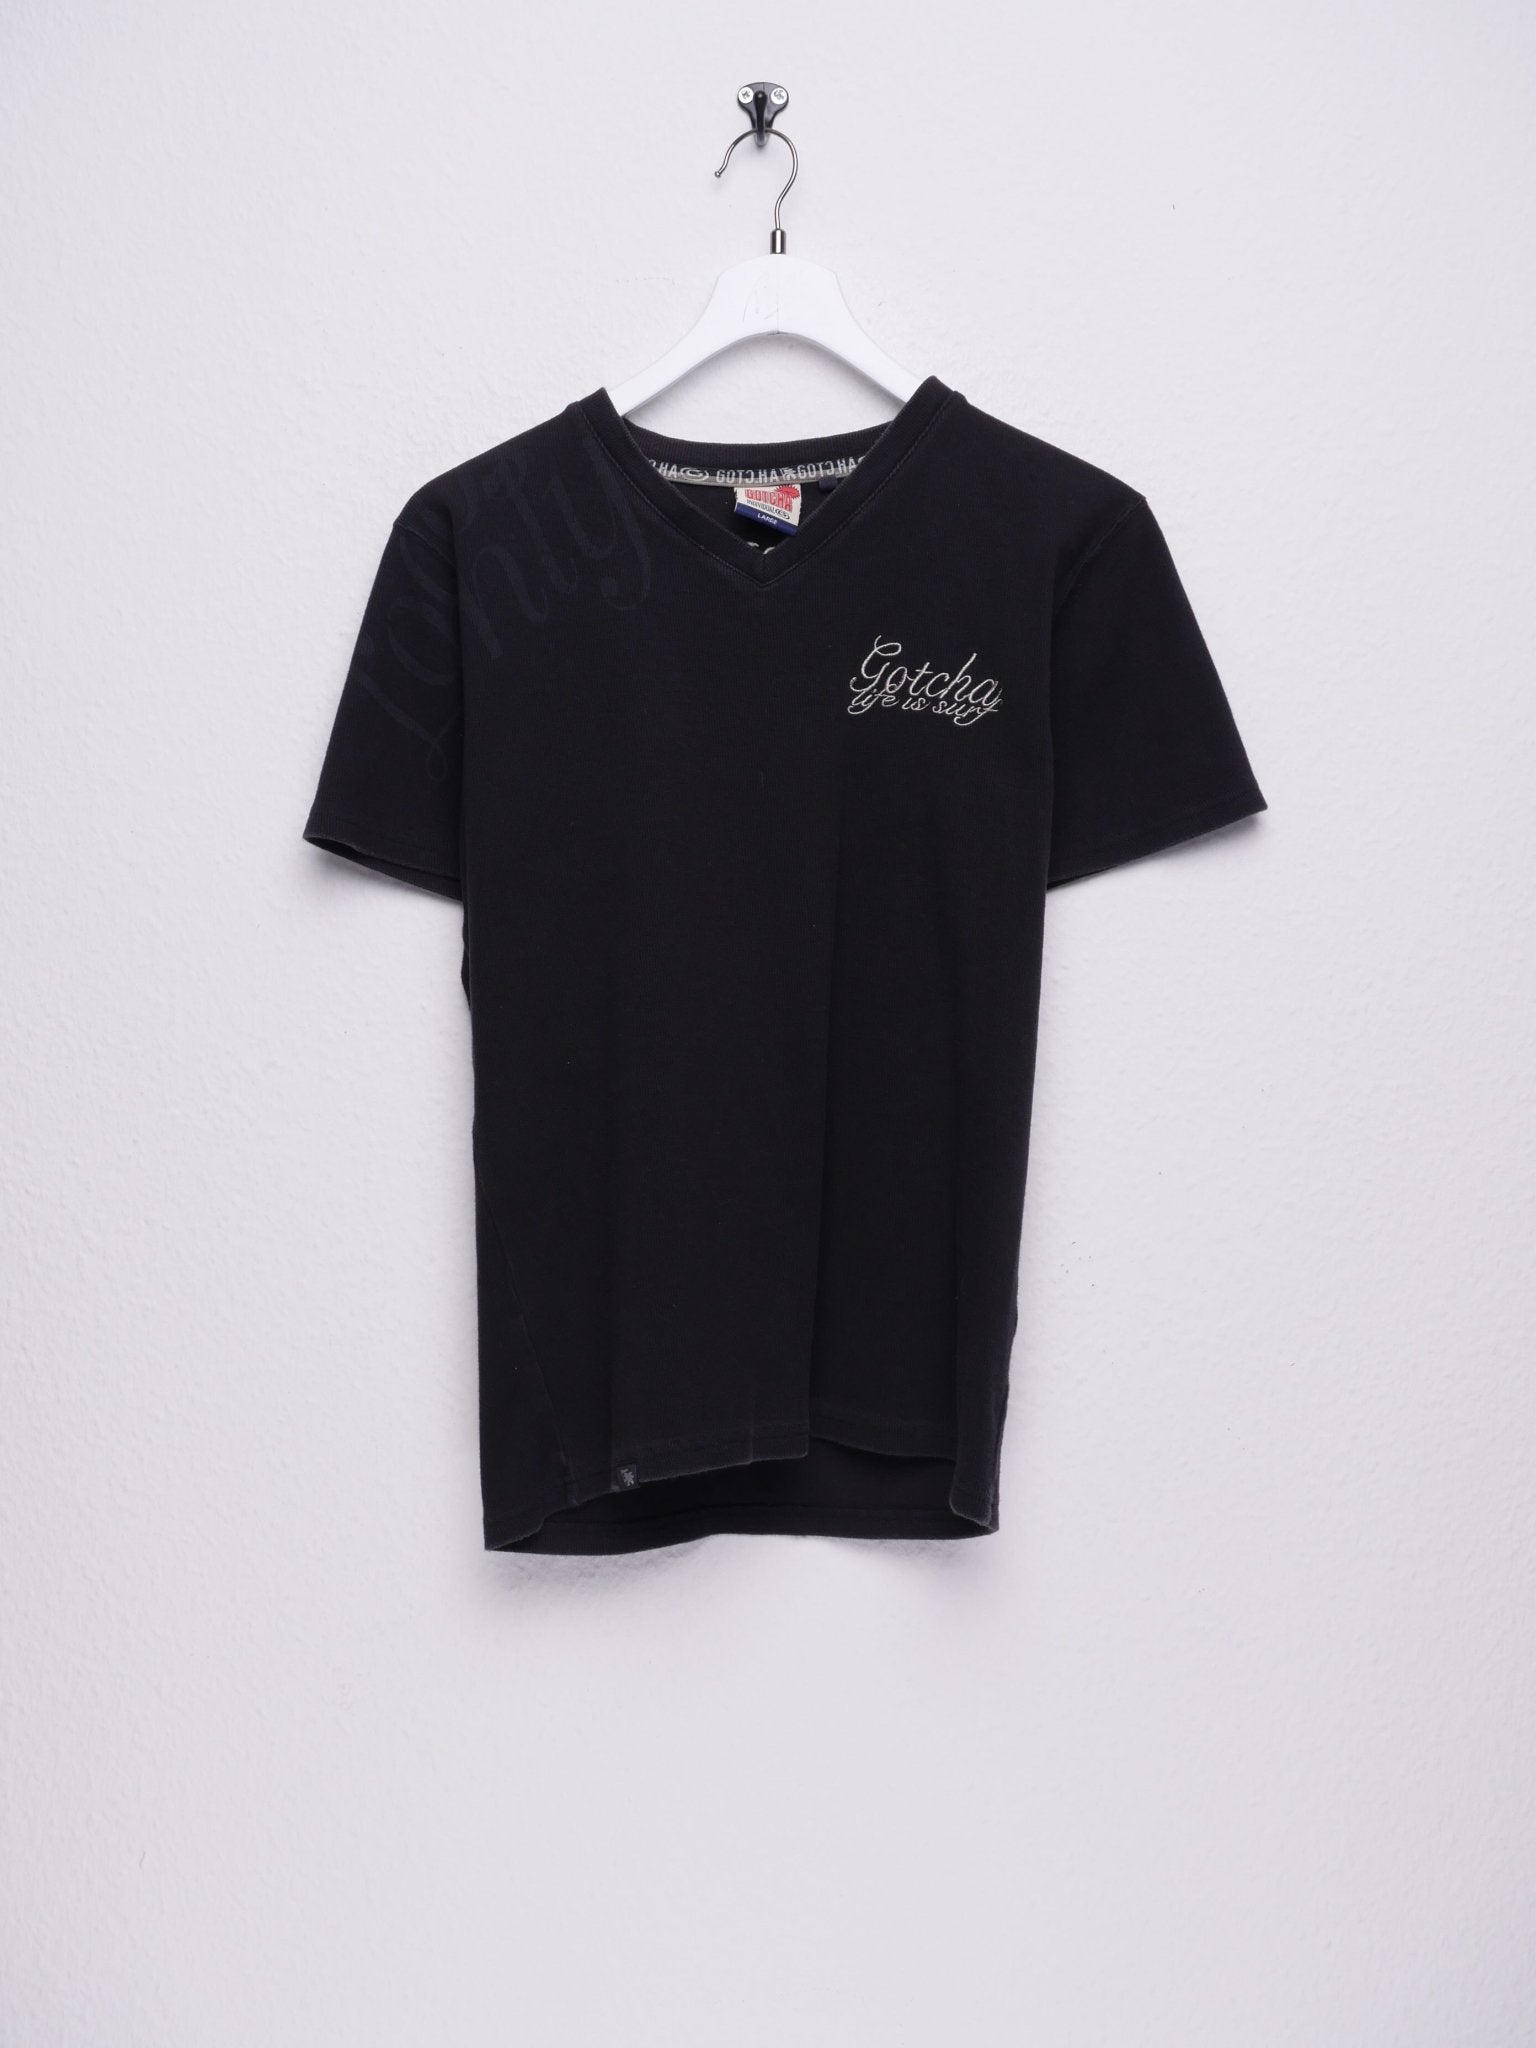 Gotcha embroidered black basic Shirt - Peeces